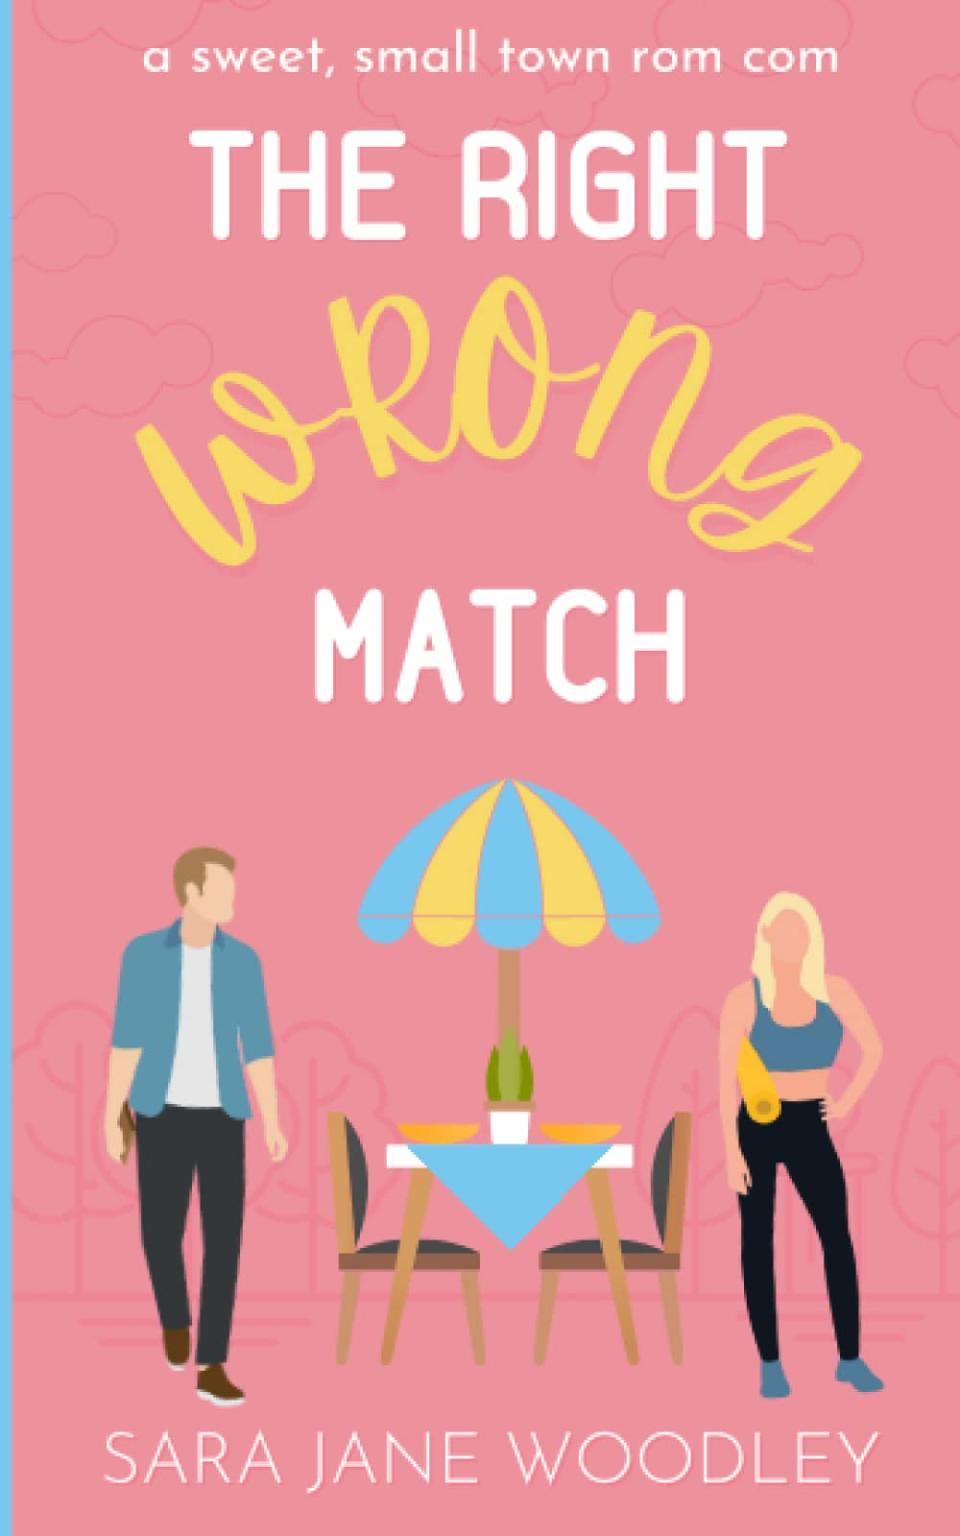 Wrong match